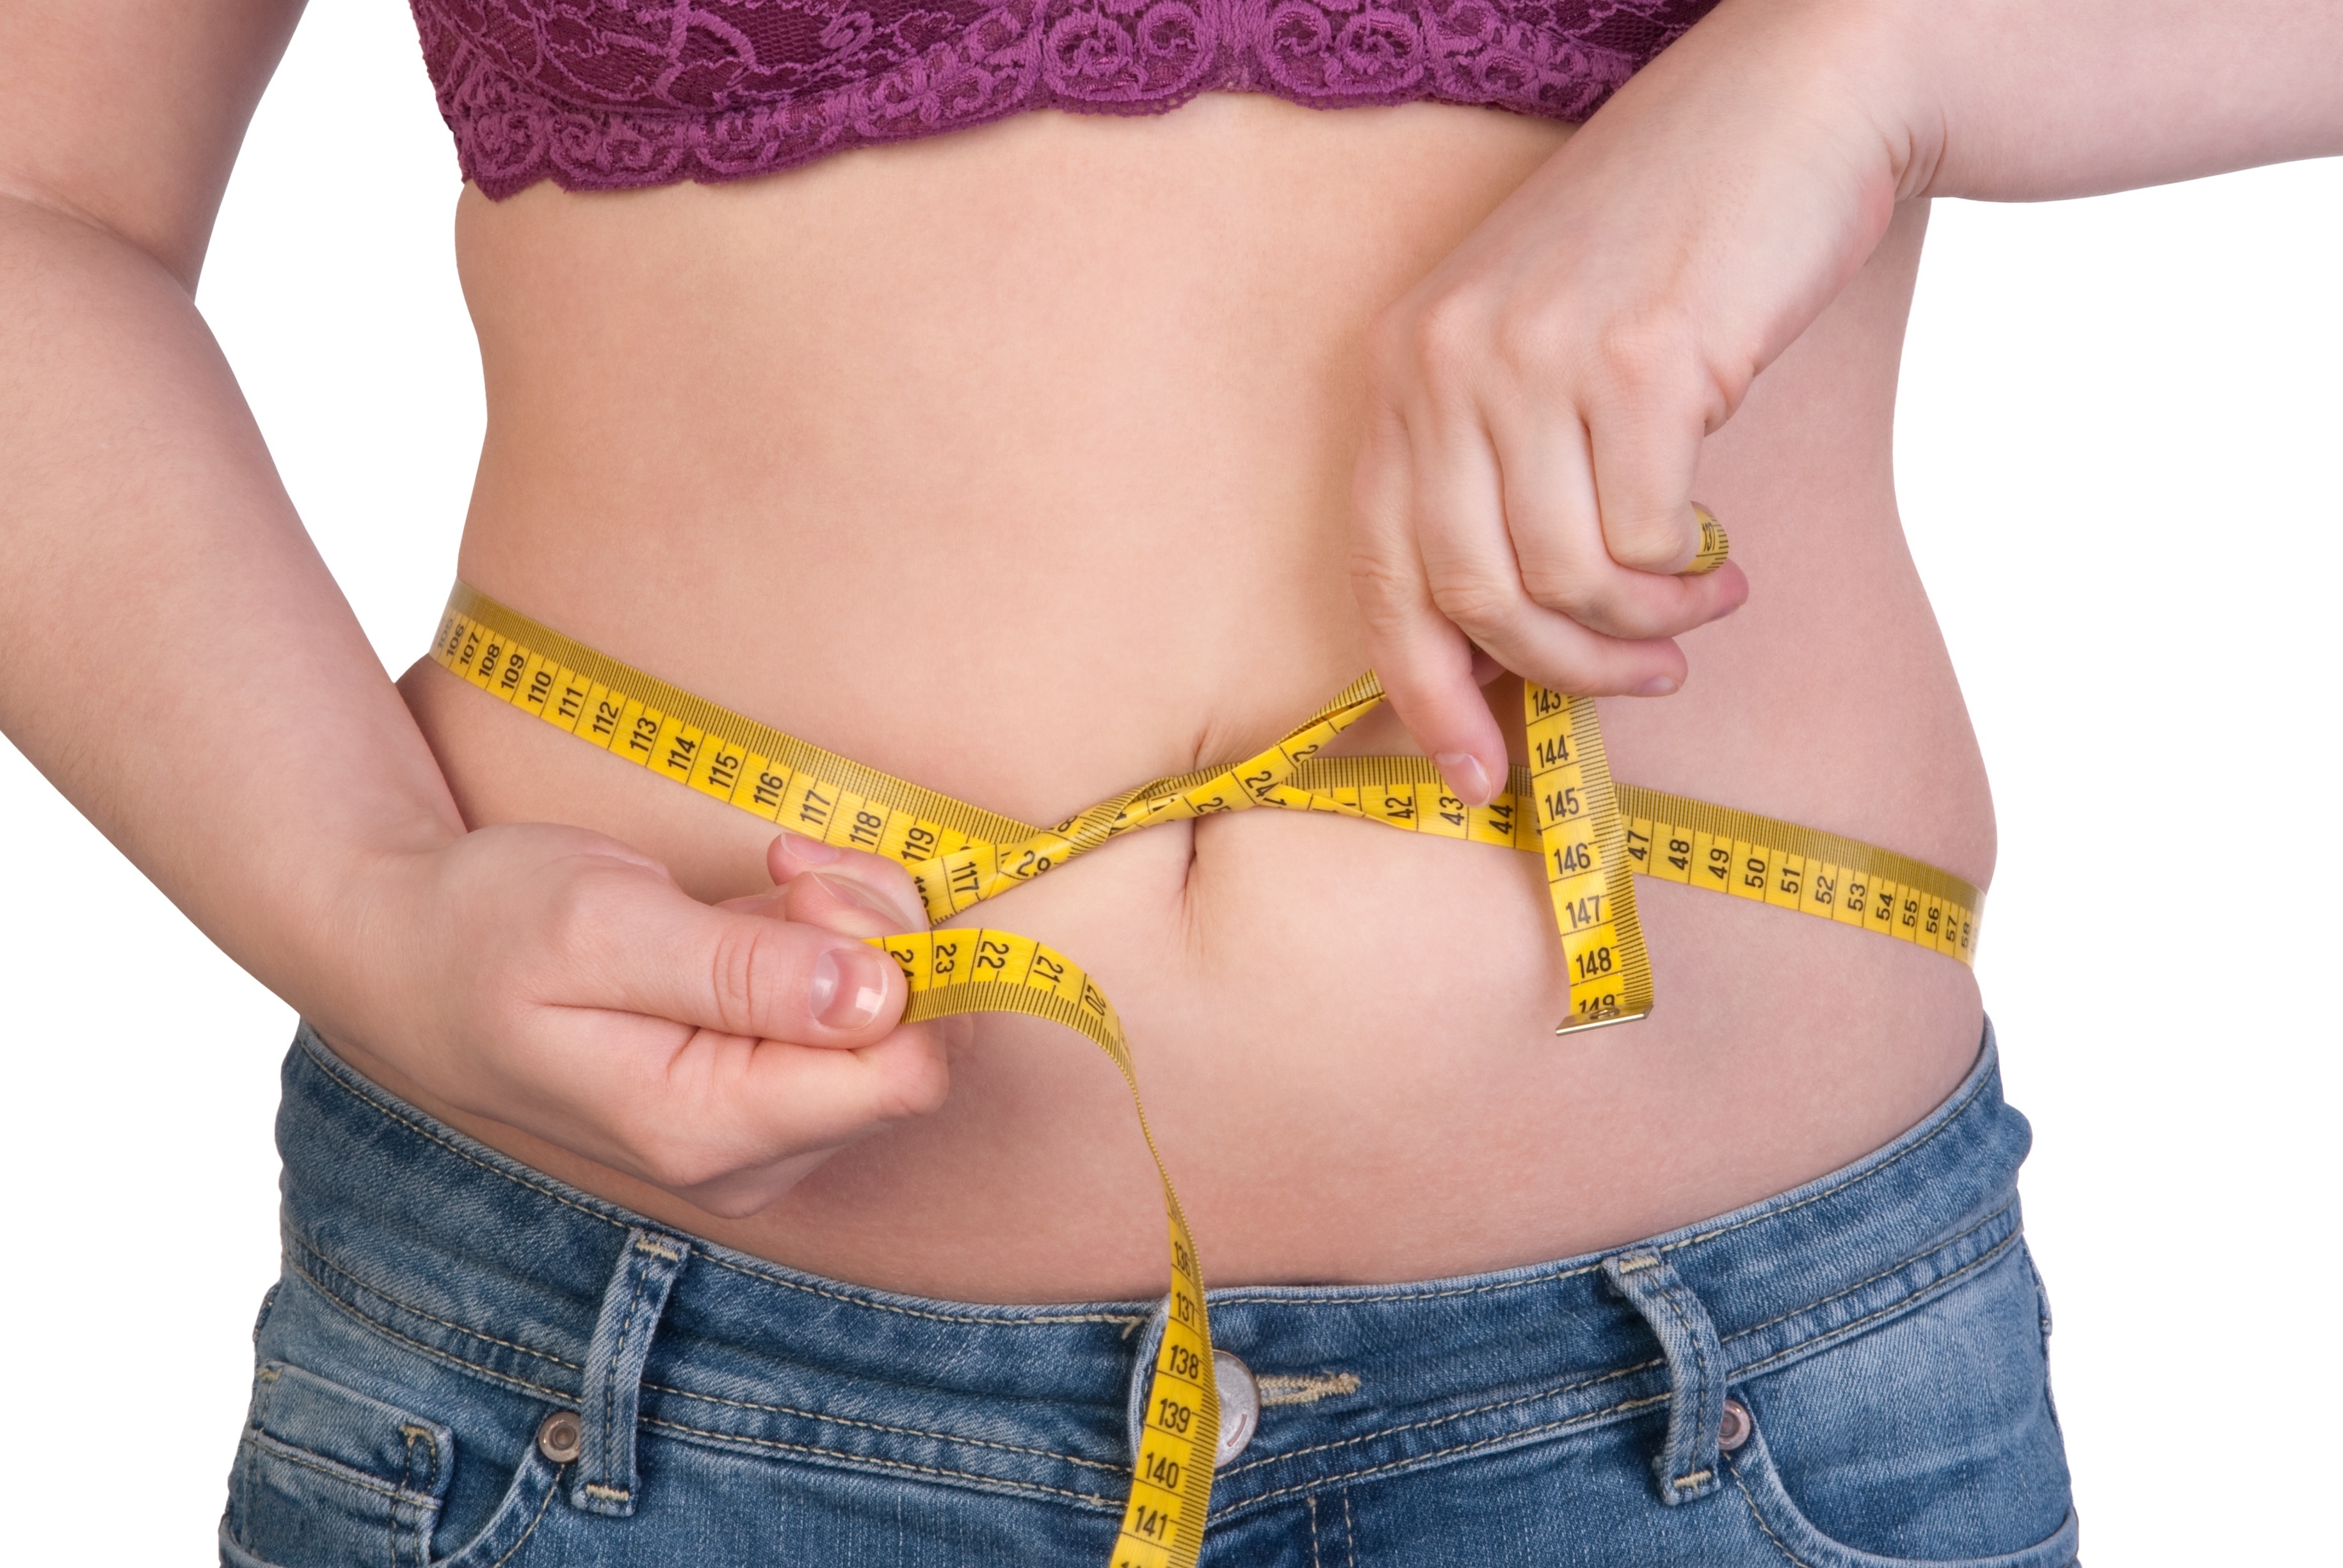 pierderea în greutate pentru femelele endomorf cum 2 pierde în greutate în 4 săptămâni